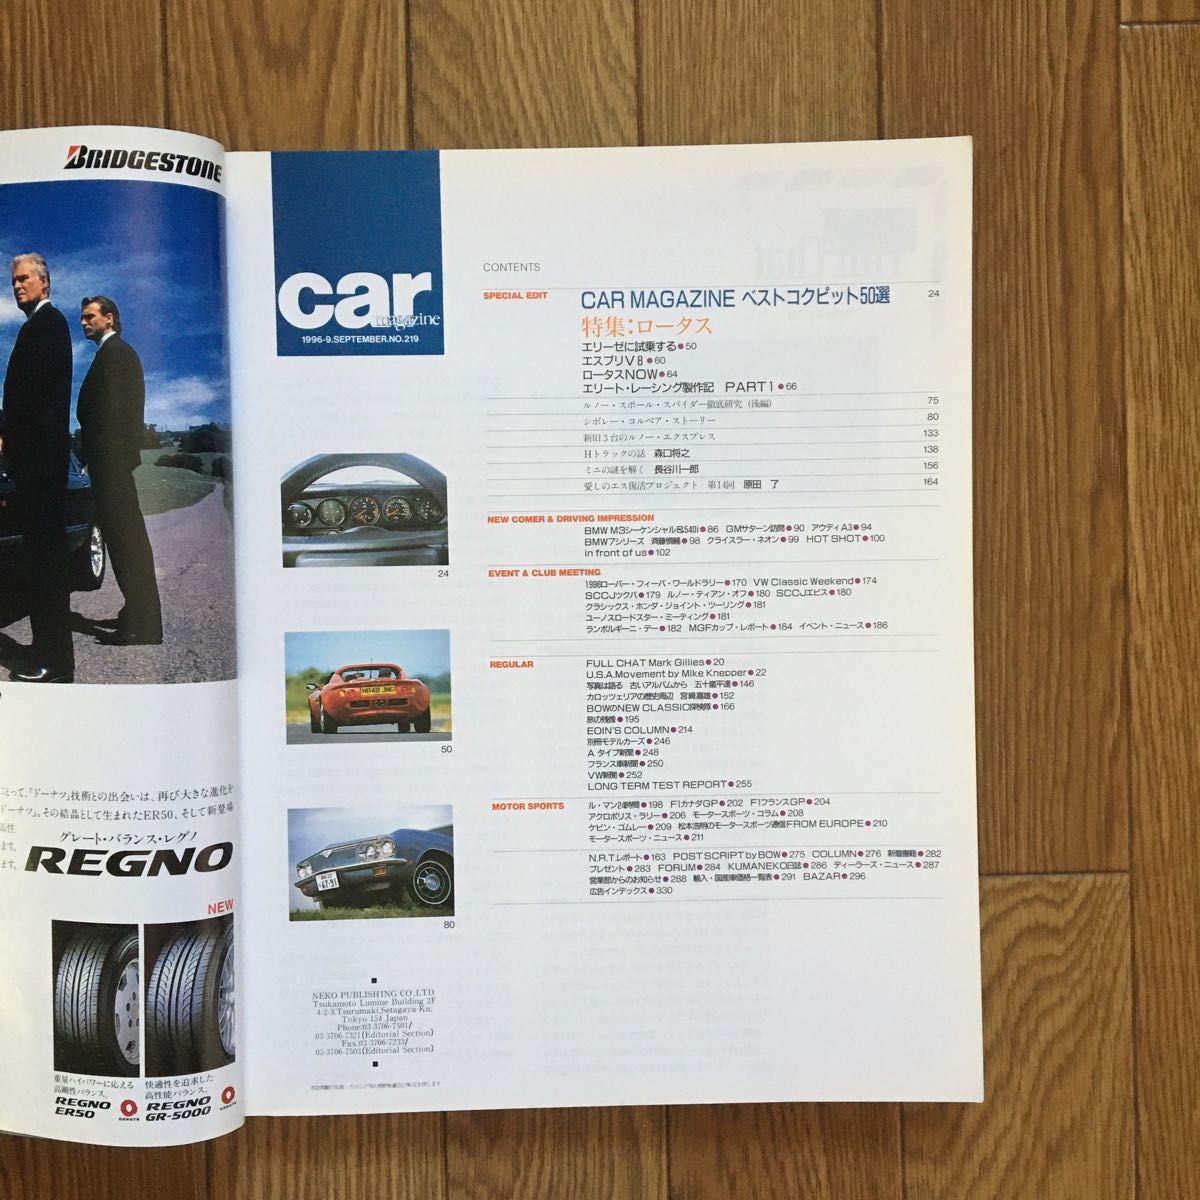 CAR MAGAZINE カーマガジン No.219 カー・マガジンが選ぶ50のベスト・コックピット全公開 1996年9月号